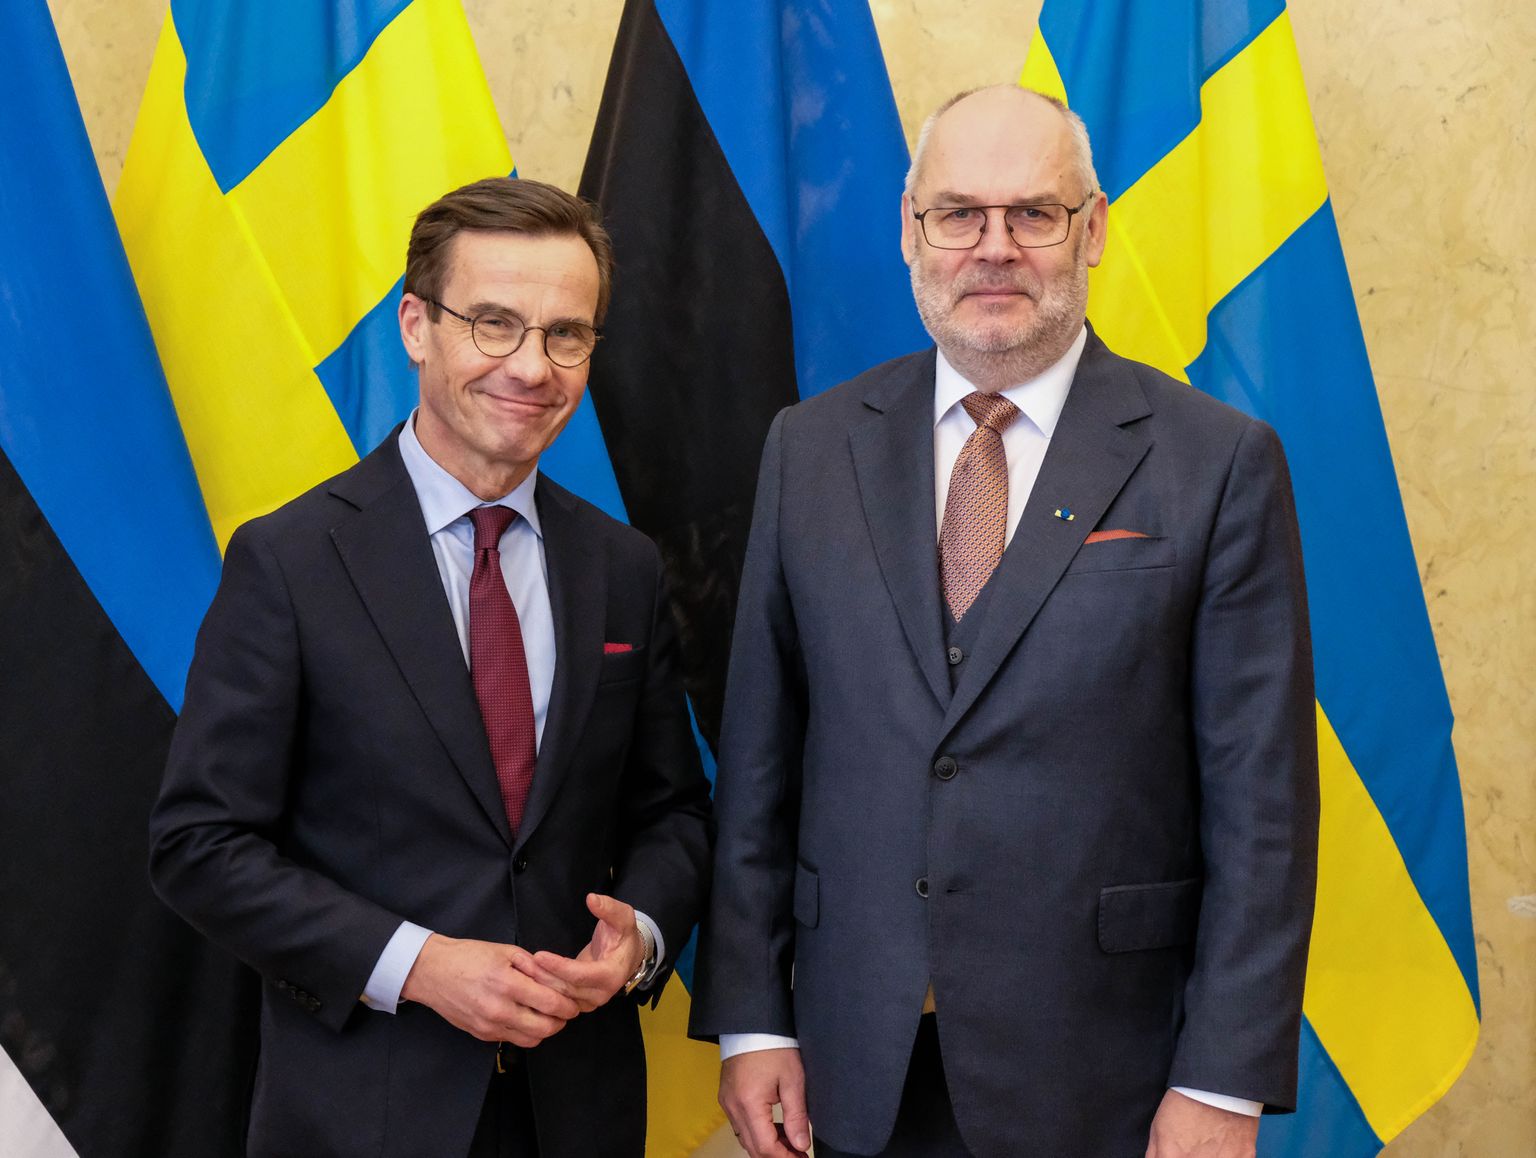 Президент Алар Карис не встрече с премьер-министром Швеции Ульфом Кристерссоном